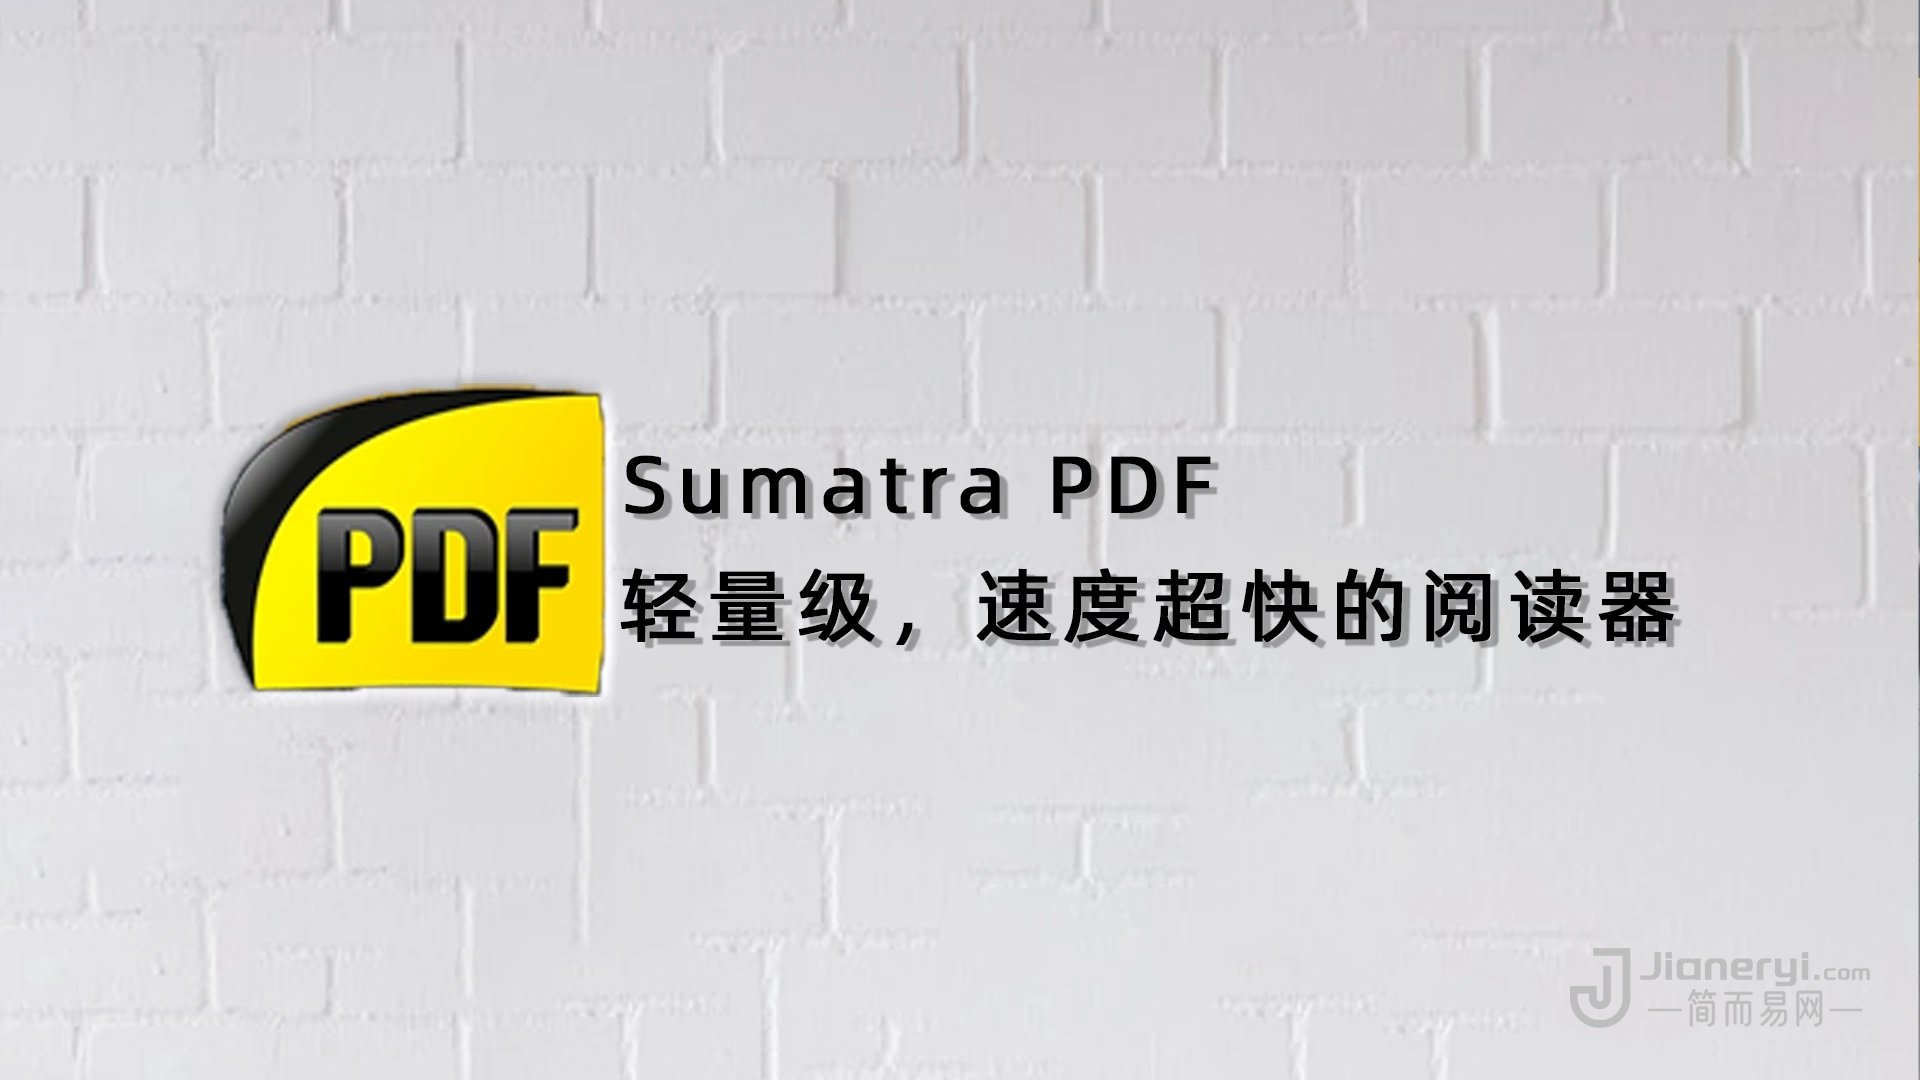 Sumatra PDF – 免费的电子书阅读器软件丨简而易网